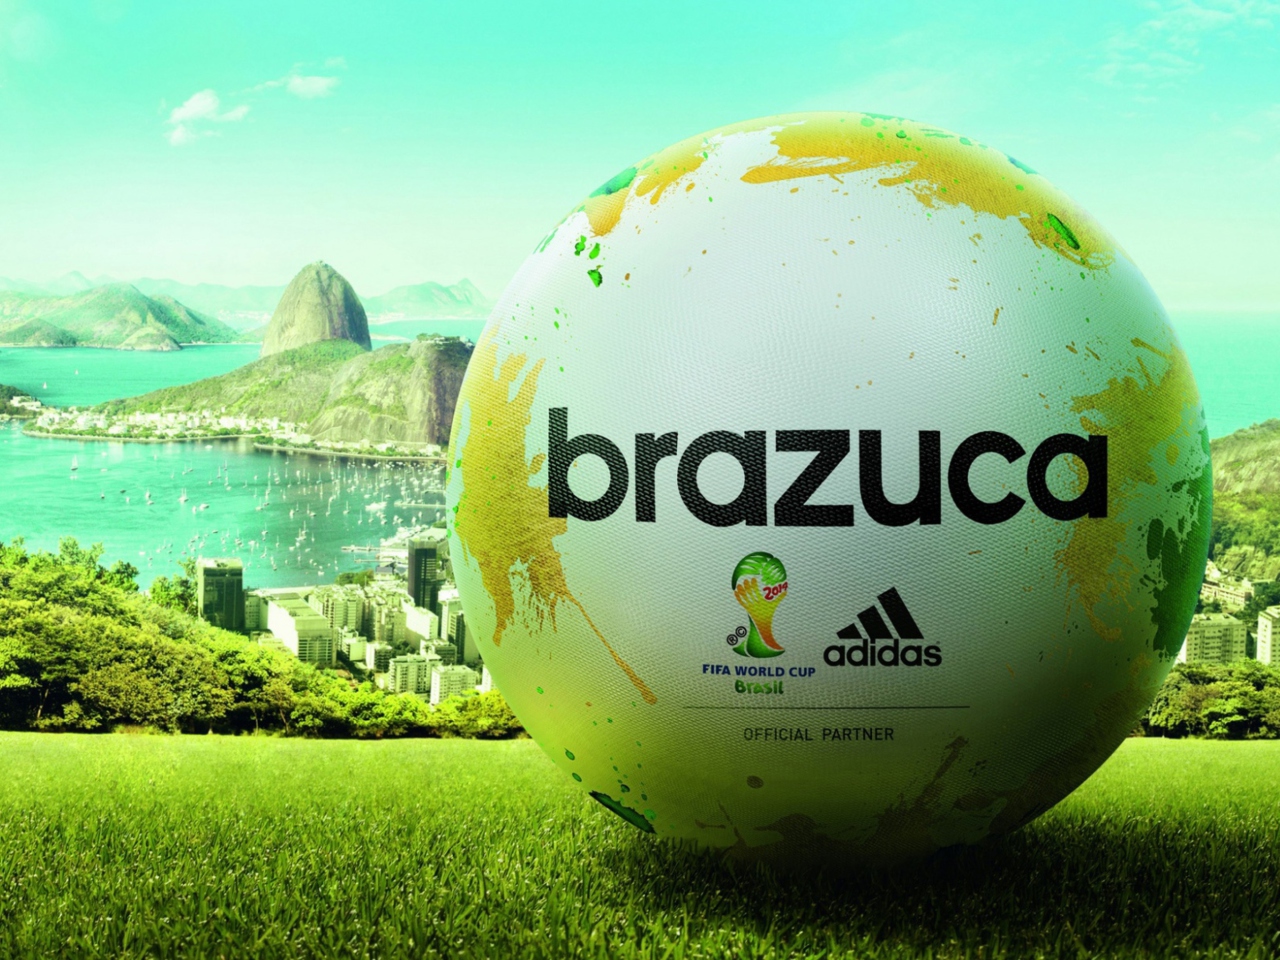 Das Adidas Brazuca Match Ball FIFA World Cup 2014 Wallpaper 1280x960